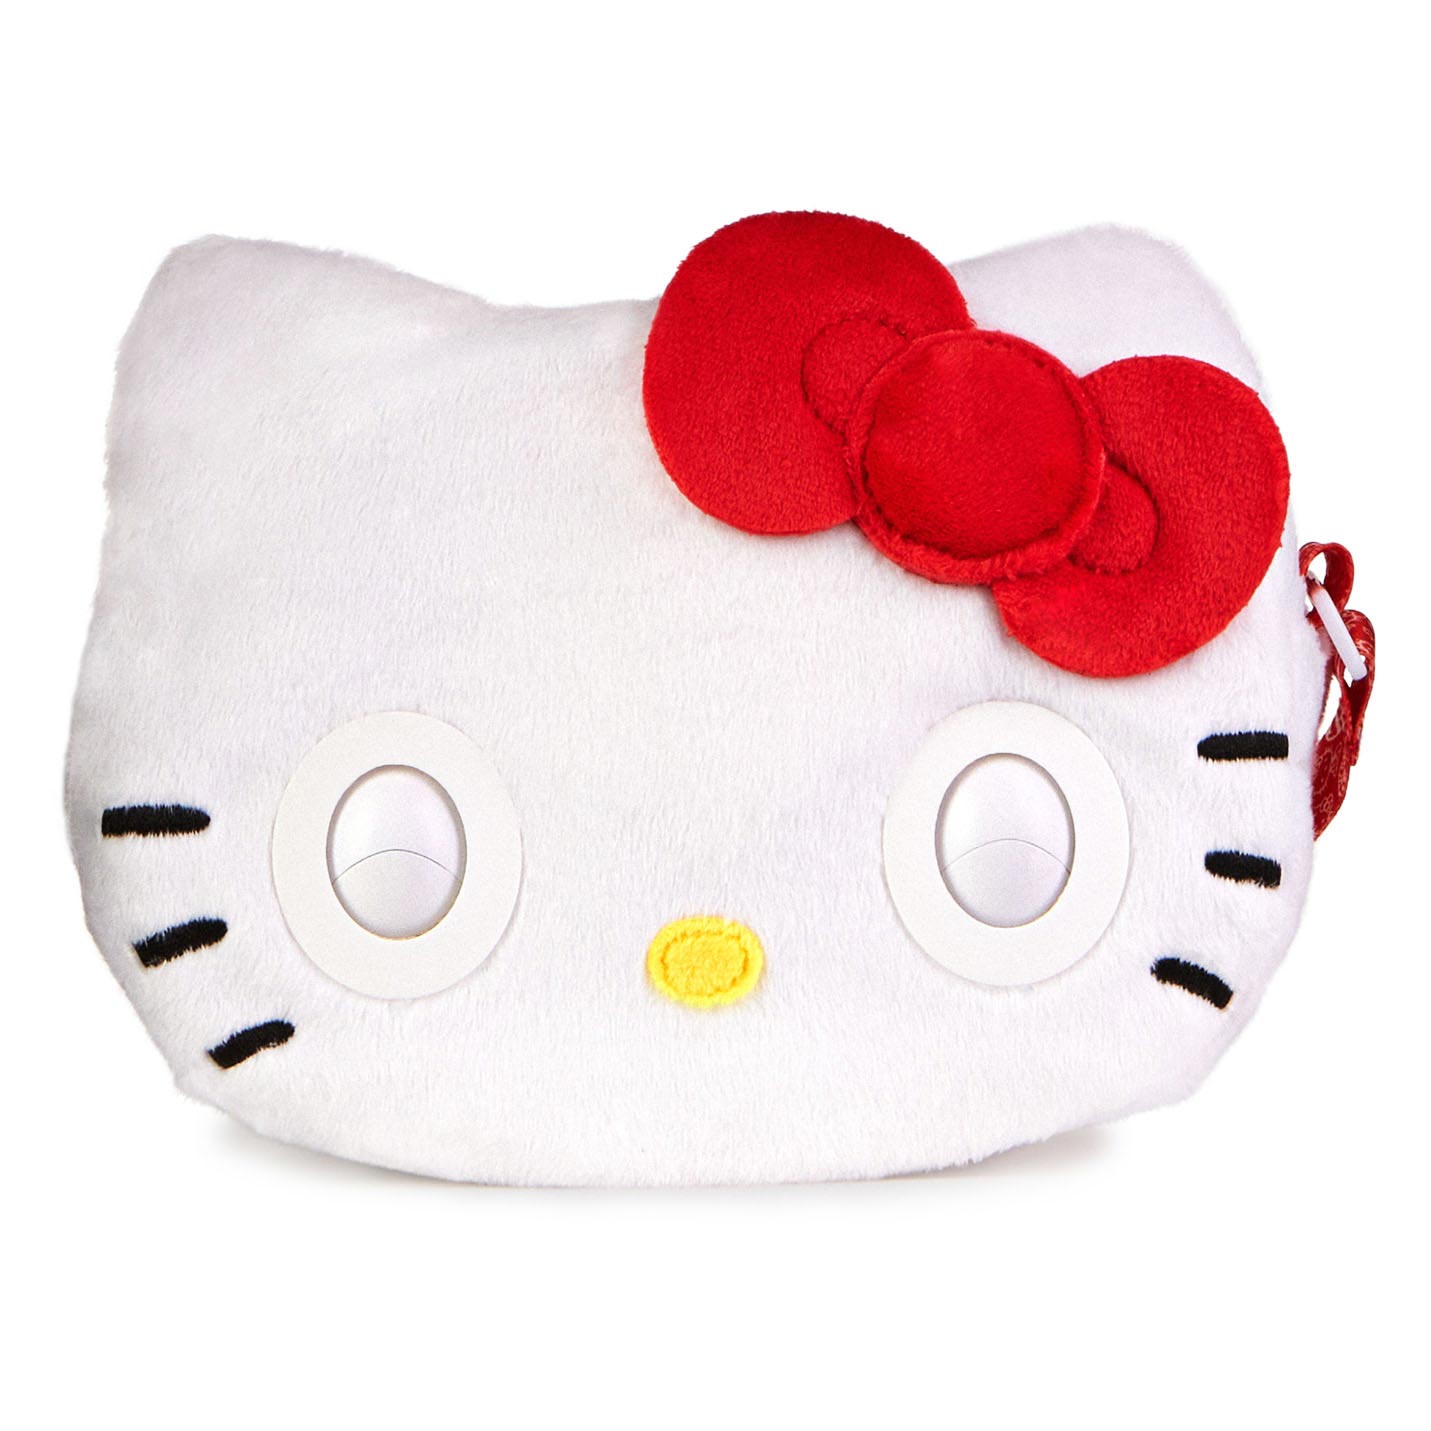 Purse Pets - Hello Kitty Interactieve Handtas